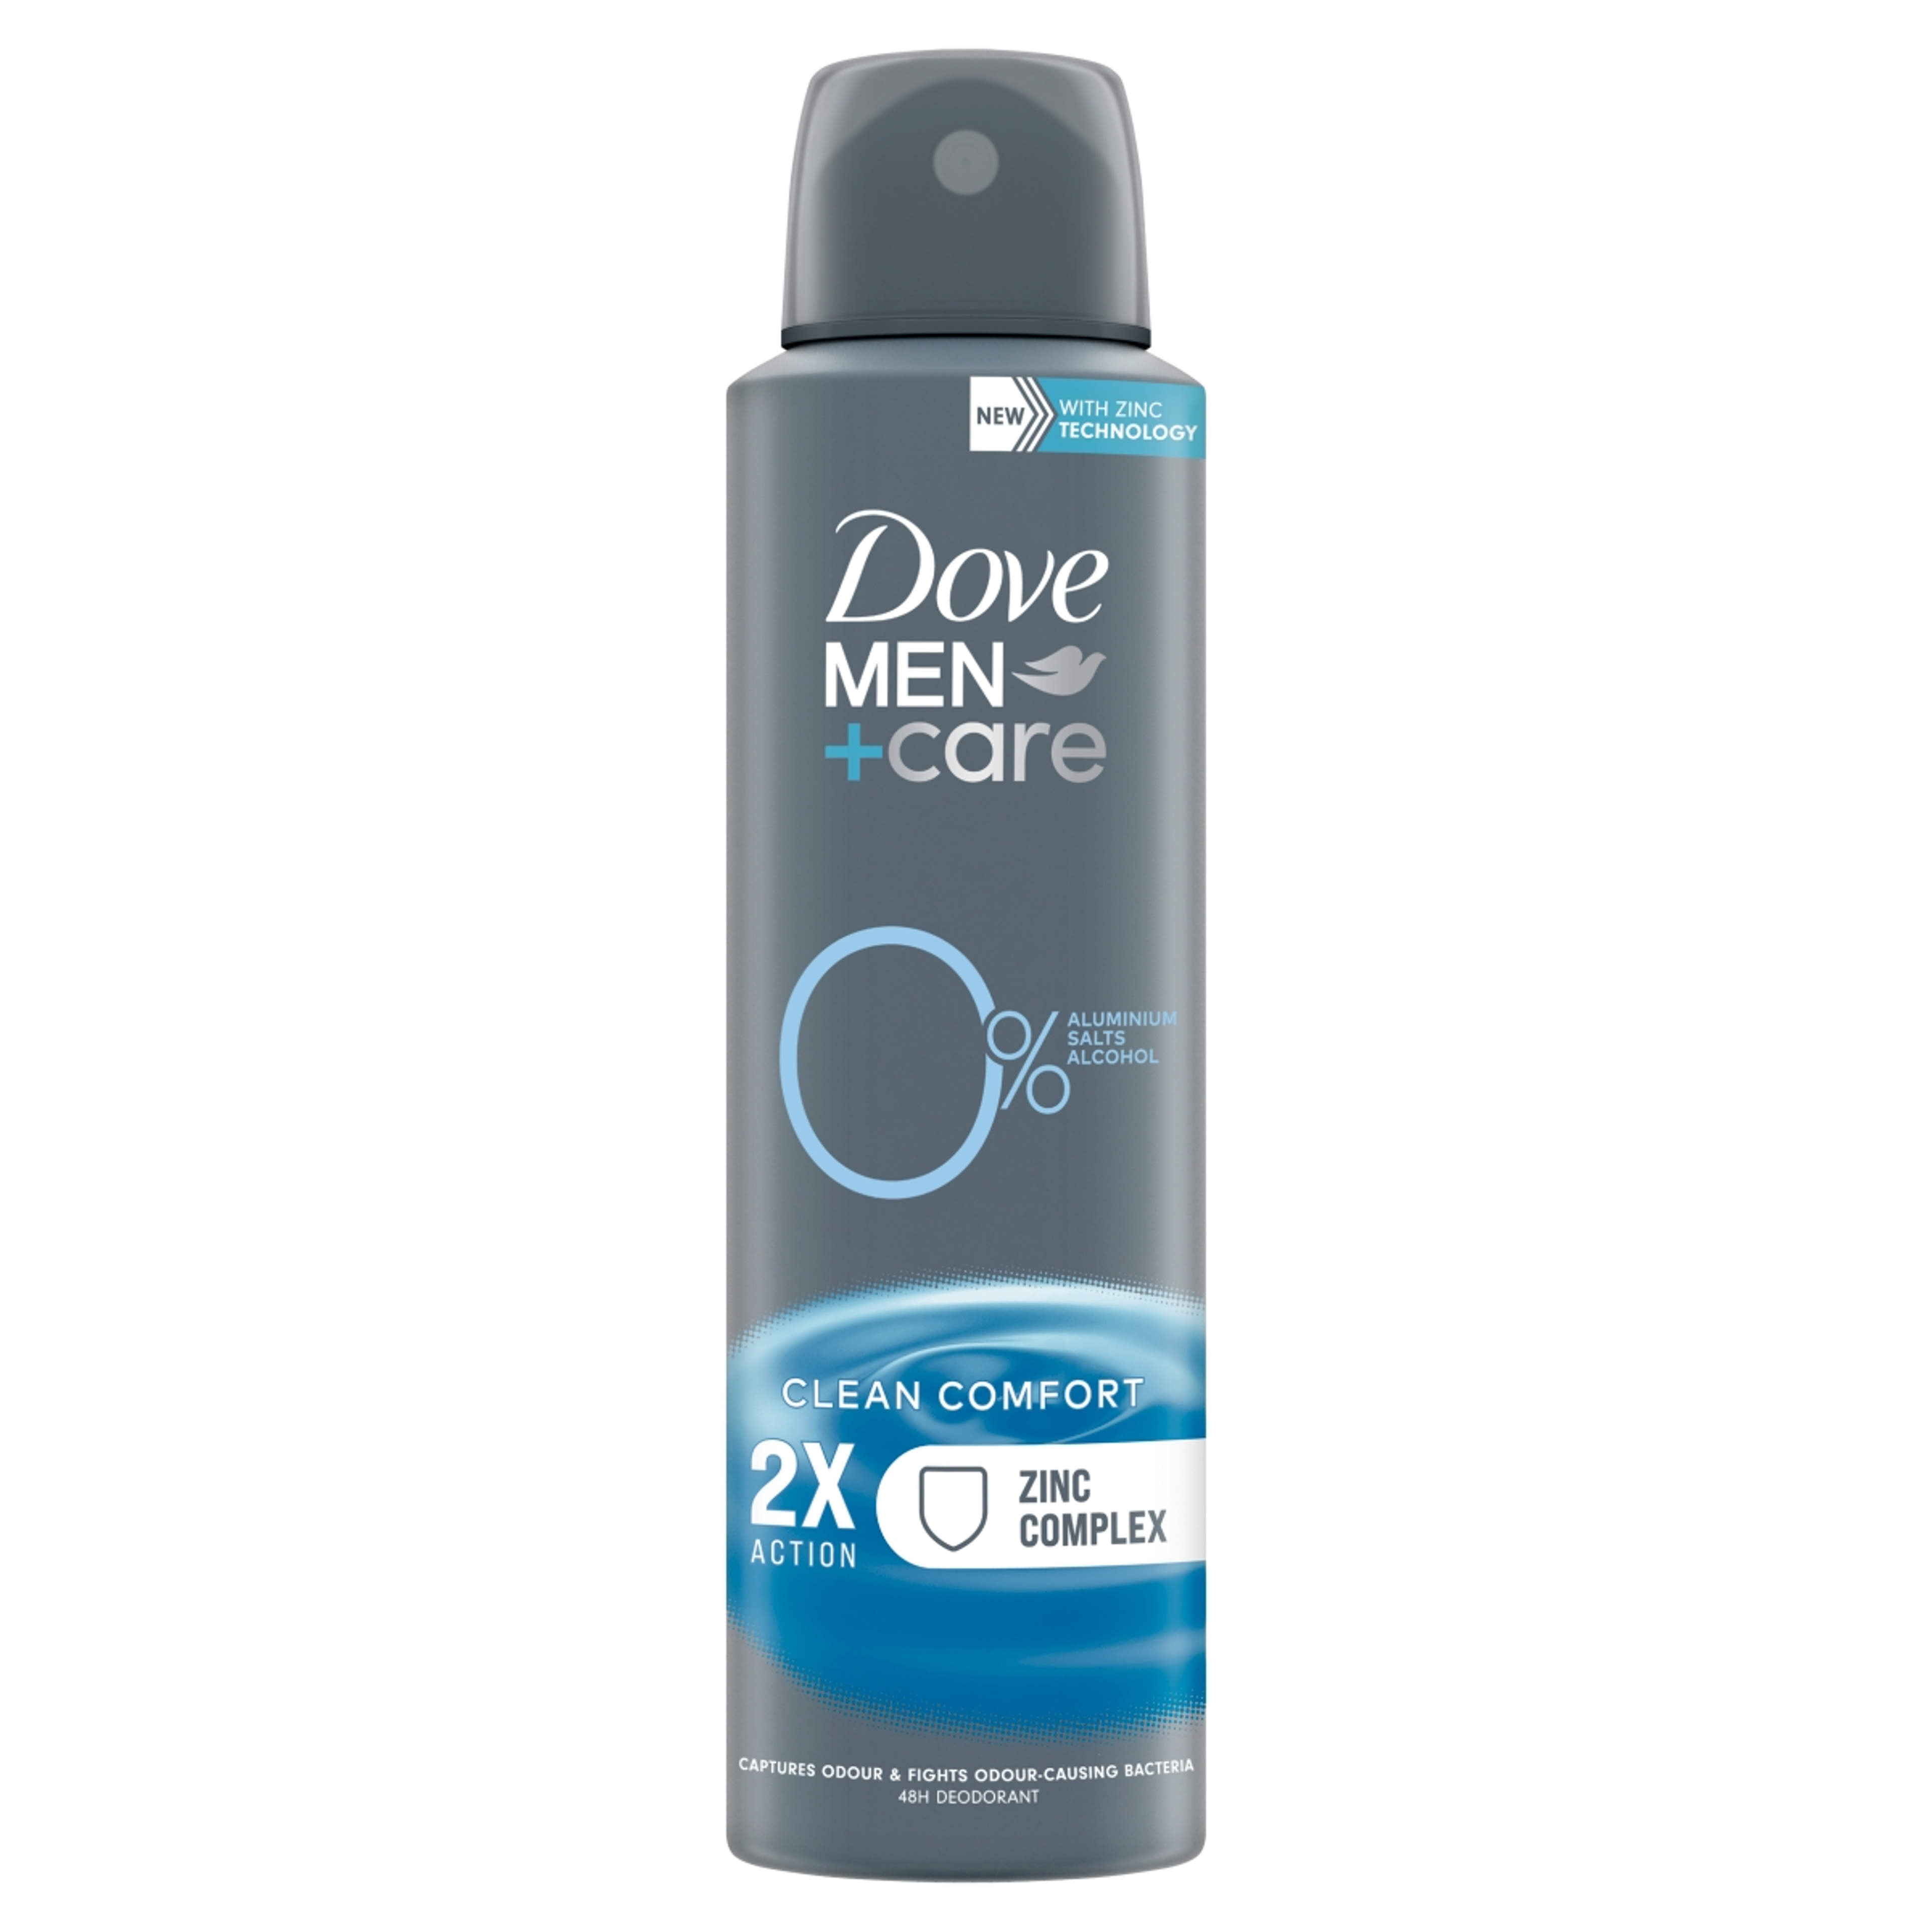 Dove deo men+care 0% clean comfort férfi - 150 ml